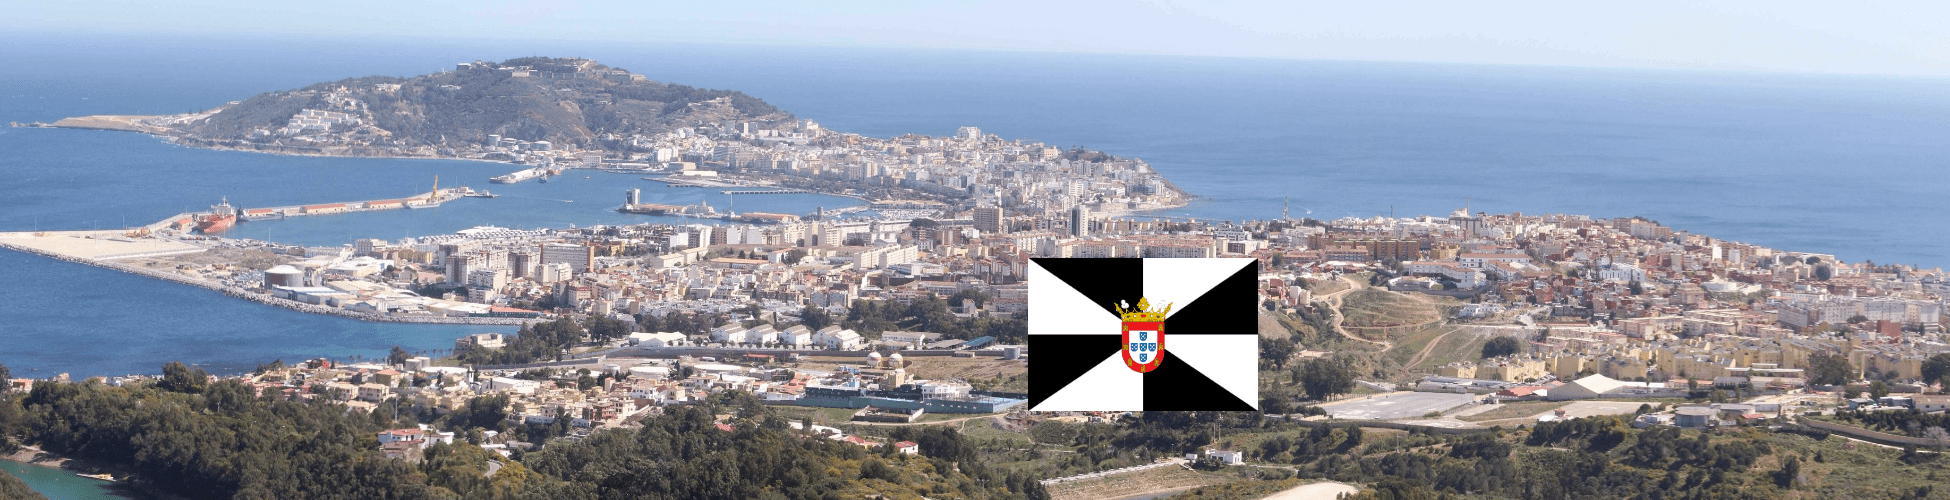 Imatge recurs del port de destinació Ceuta per a la ruta en ferry Algesires - Ceuta